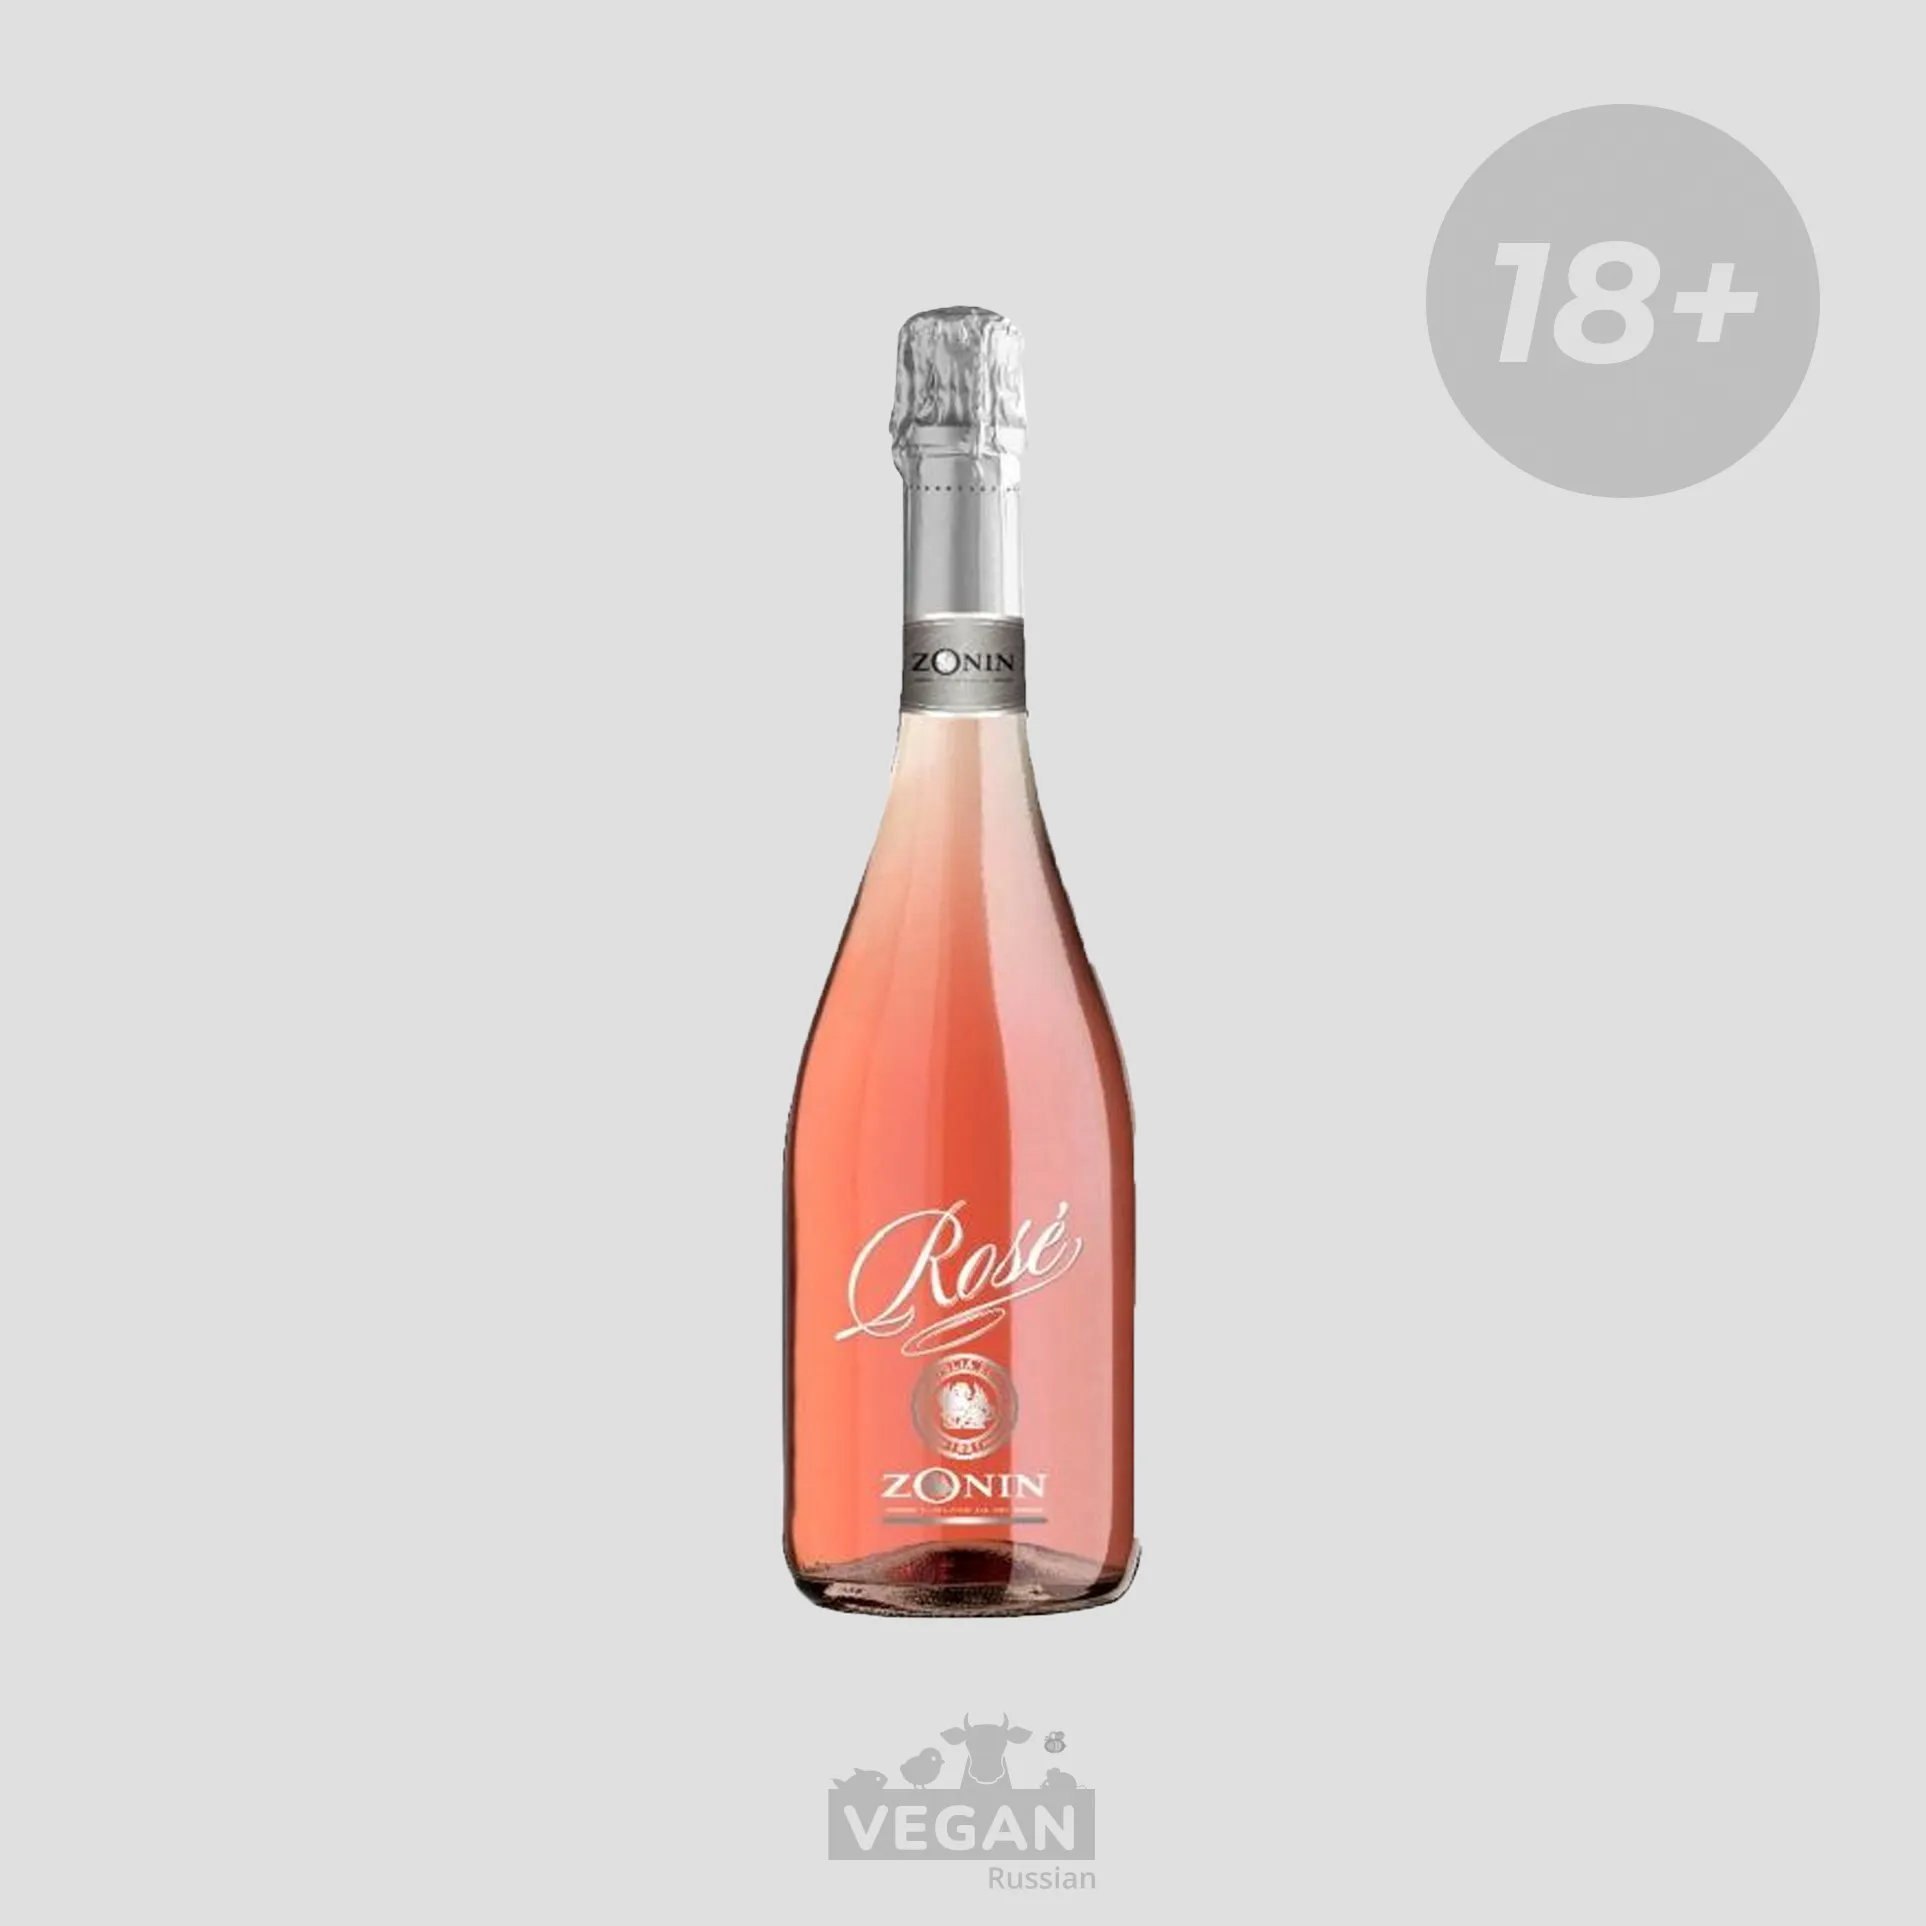 Шампанское zonin. Zonin Prosecco Rose. Зонин Просекко розовое. Zonin вино игристое. Игристое вино Zonin, Prosecco Rose doc.